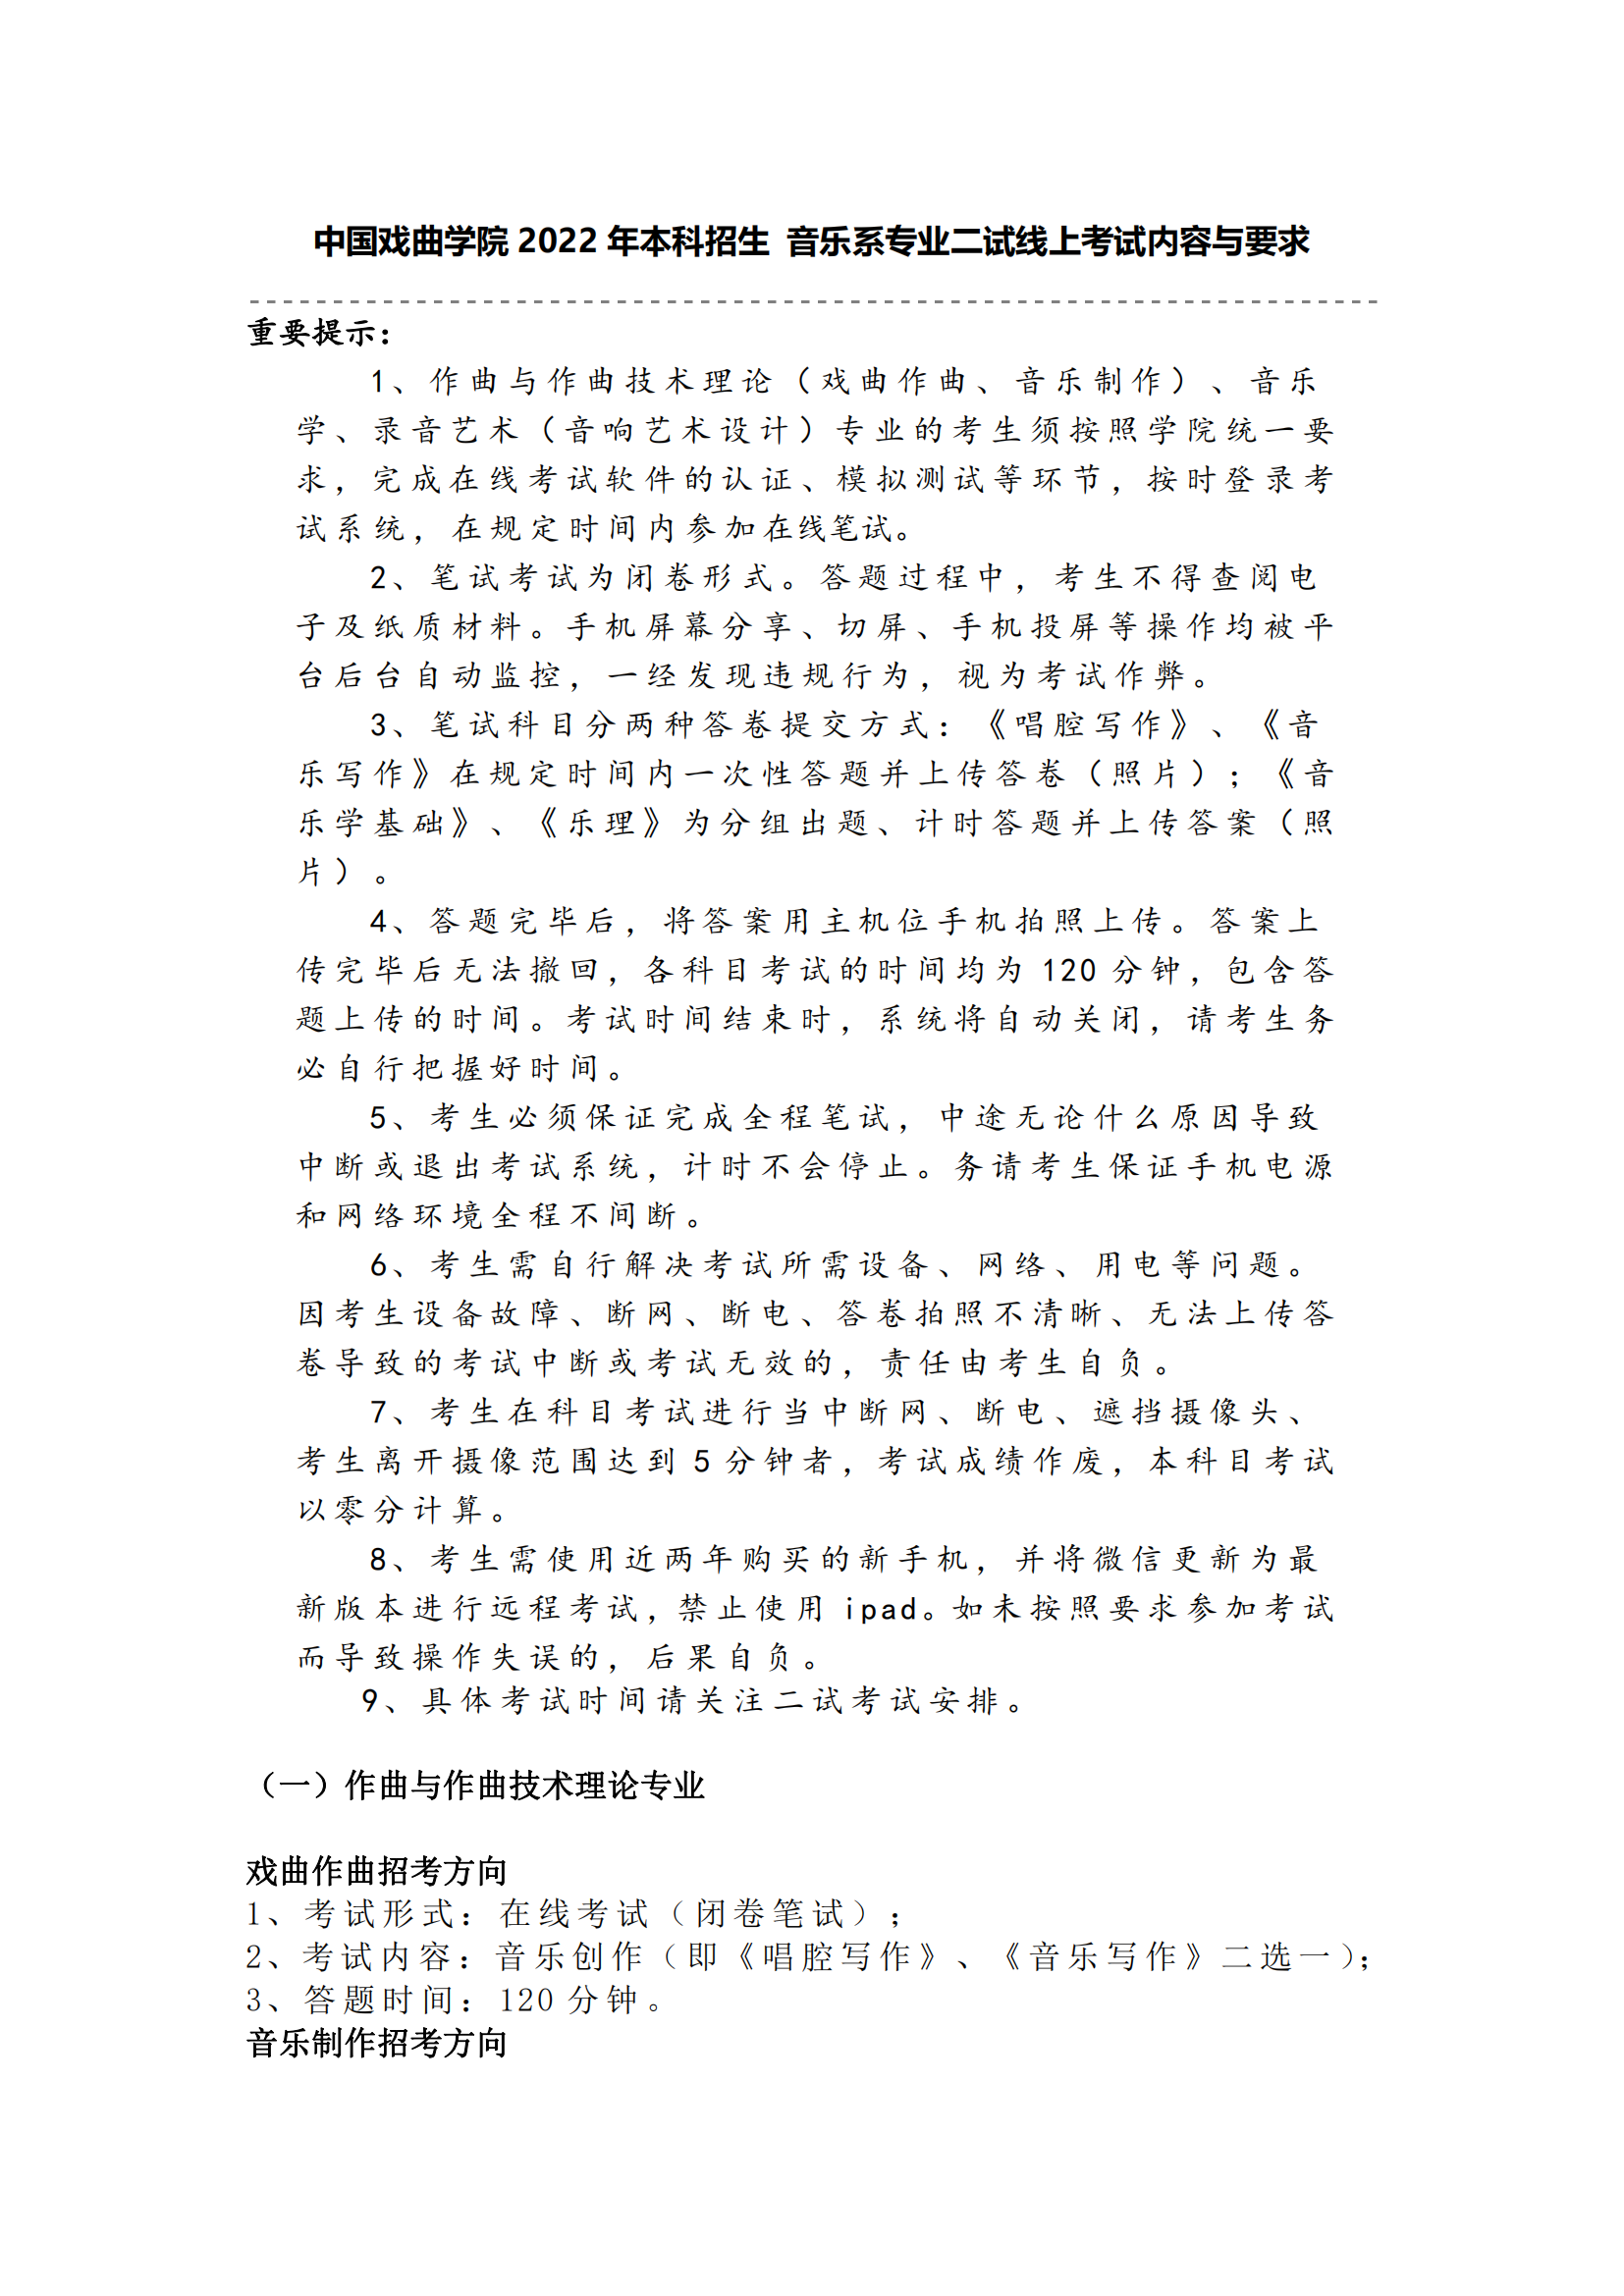 中国戏曲学院 2022 年本科招生 音乐系专业二试线上考试内容与要求_00.png